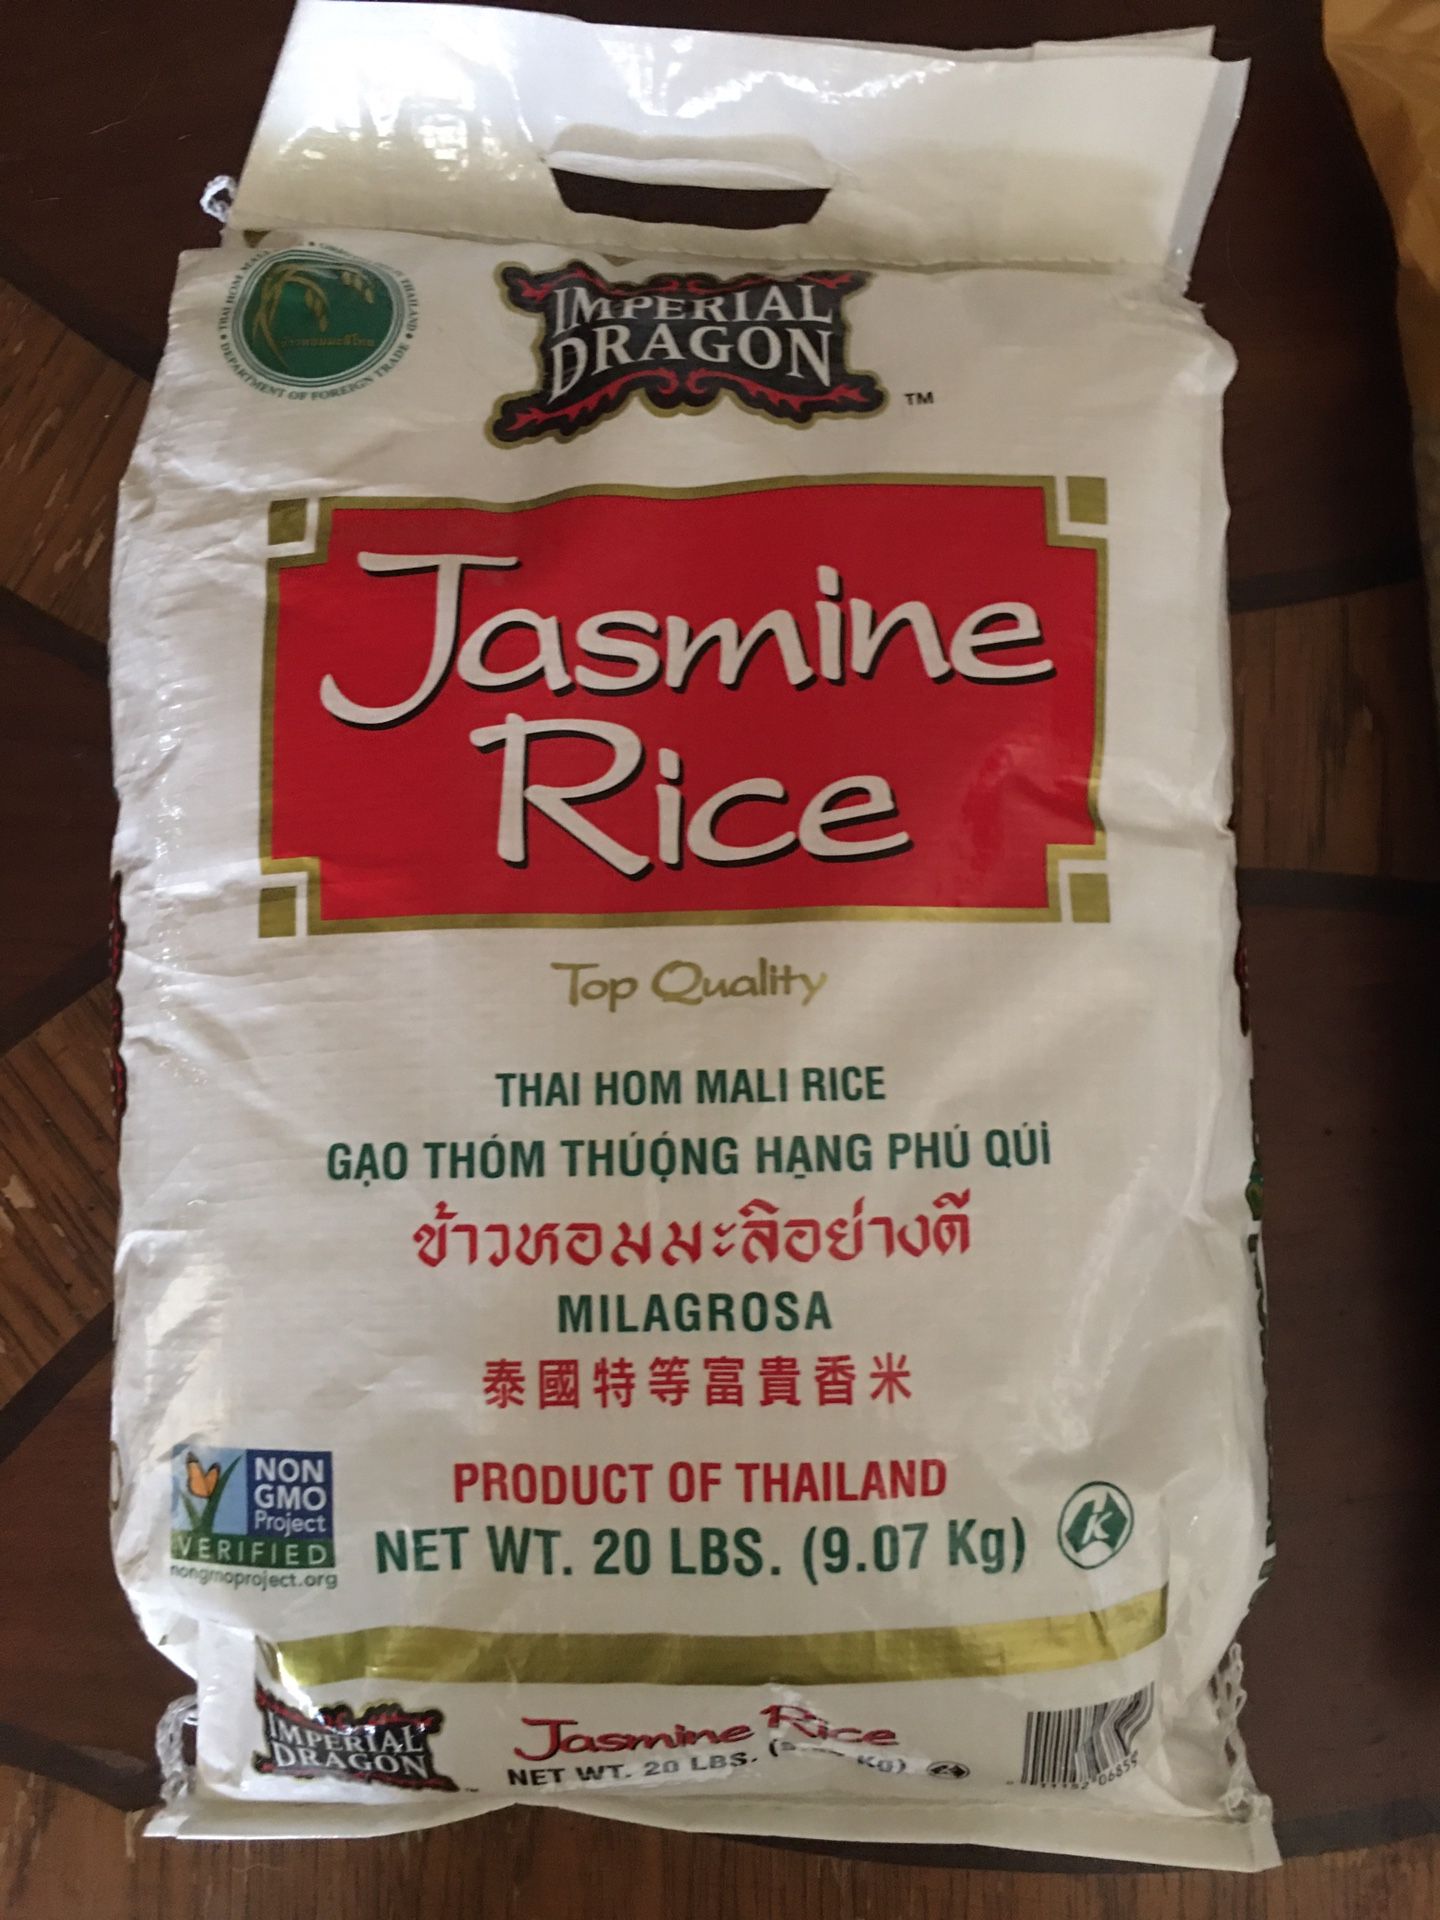 Jasmine Rice & Peruano Beans